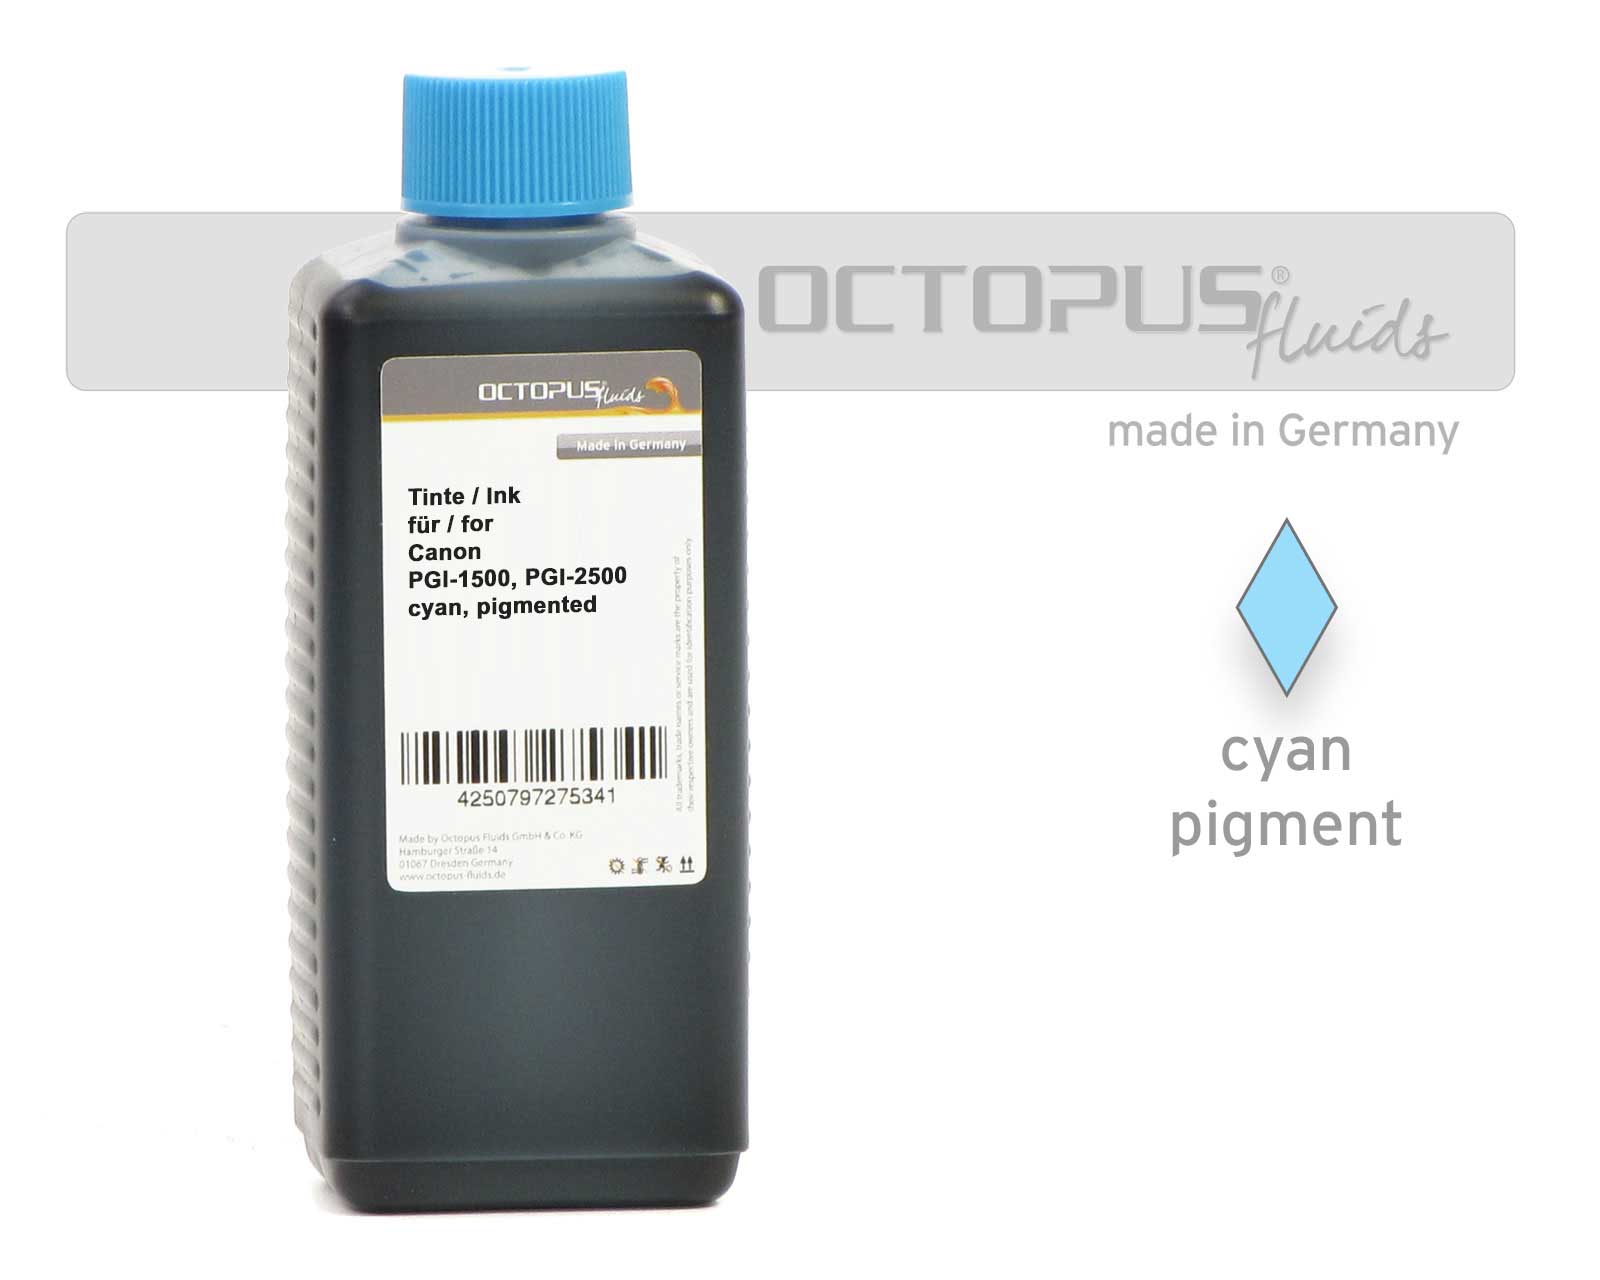 Tinte,Ink für,for Canon PGI-1500, PGI-2500 cyan pigmentiert